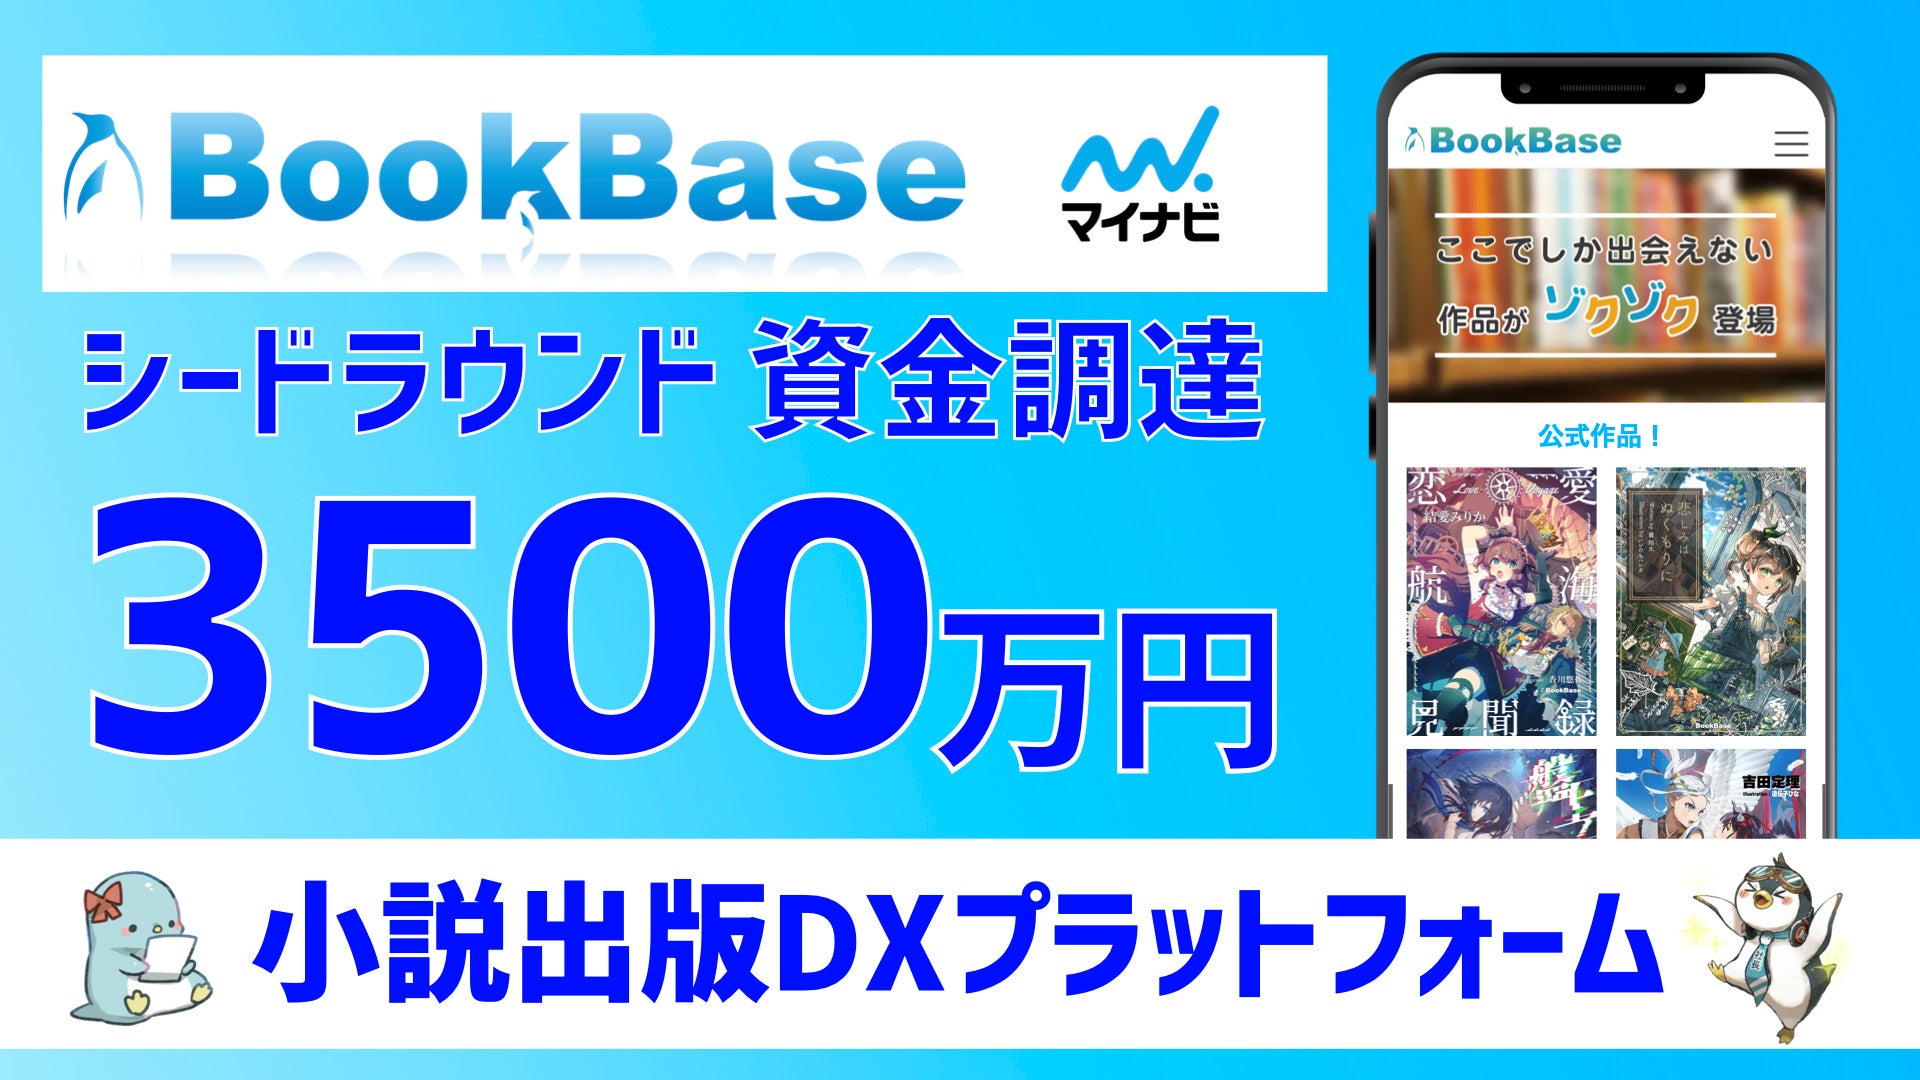 小説/ライトノベルのオンライン出版プラットフォームBookBase、シードラウンドにて3500万円の資金調達を実施。電子書籍による新たな出版システムの構築と日本発コンテンツIPの創出を加速。